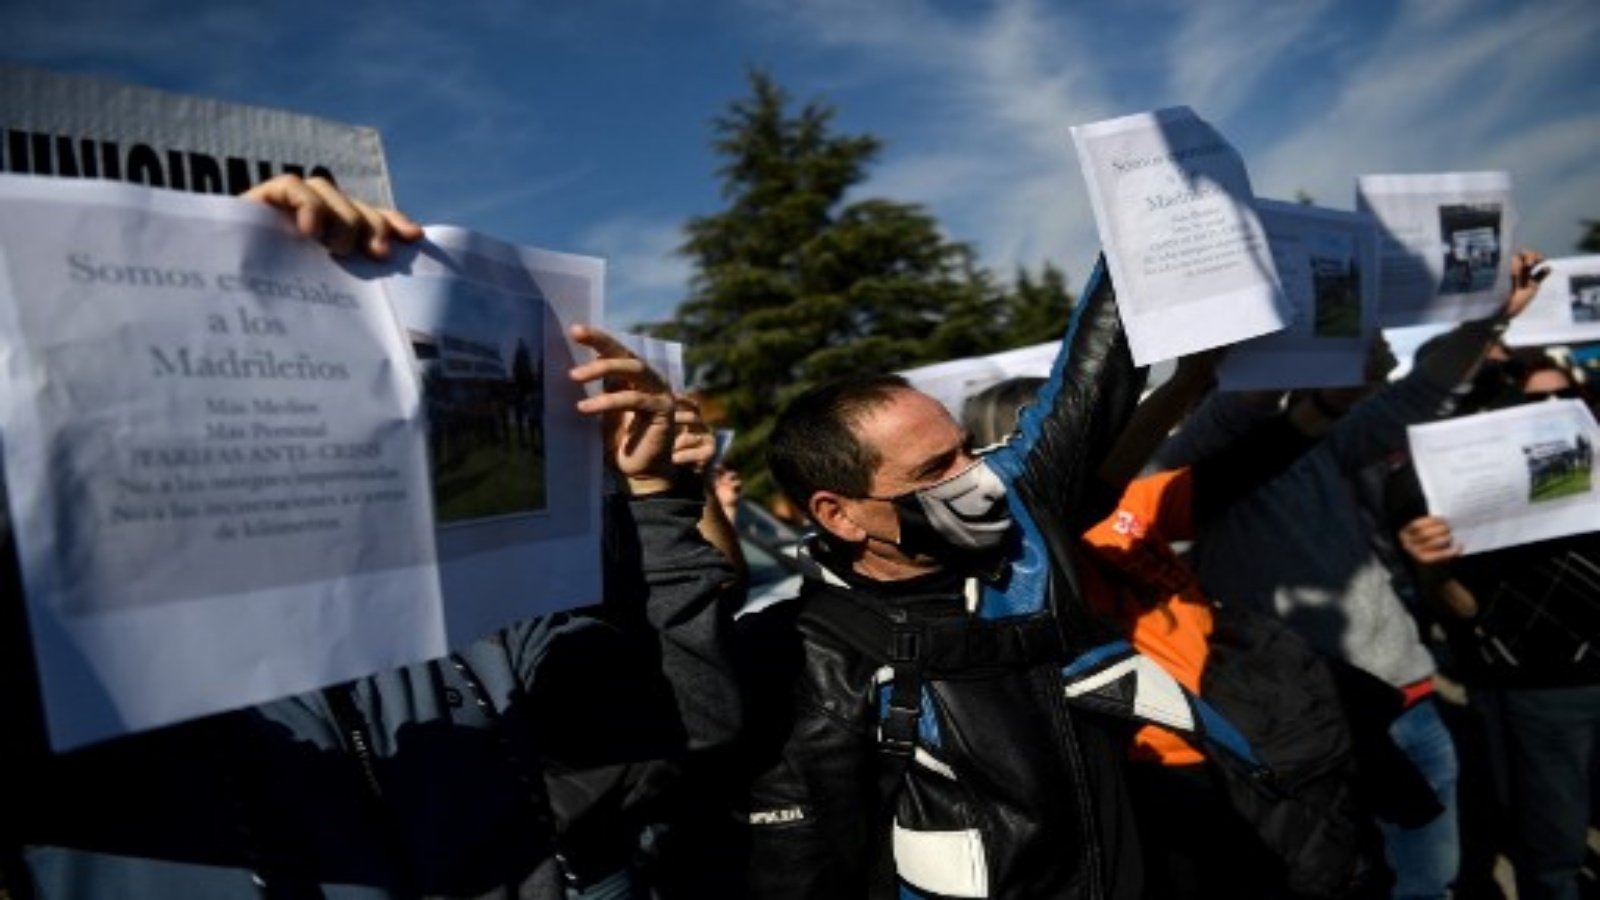 متظاهرون يحملون لافتات تدعو إلى تحسين الظروف خلال احتجاج في مدريد في 1 نوفمبر 2020 وسط جائحة فيروس كورونا